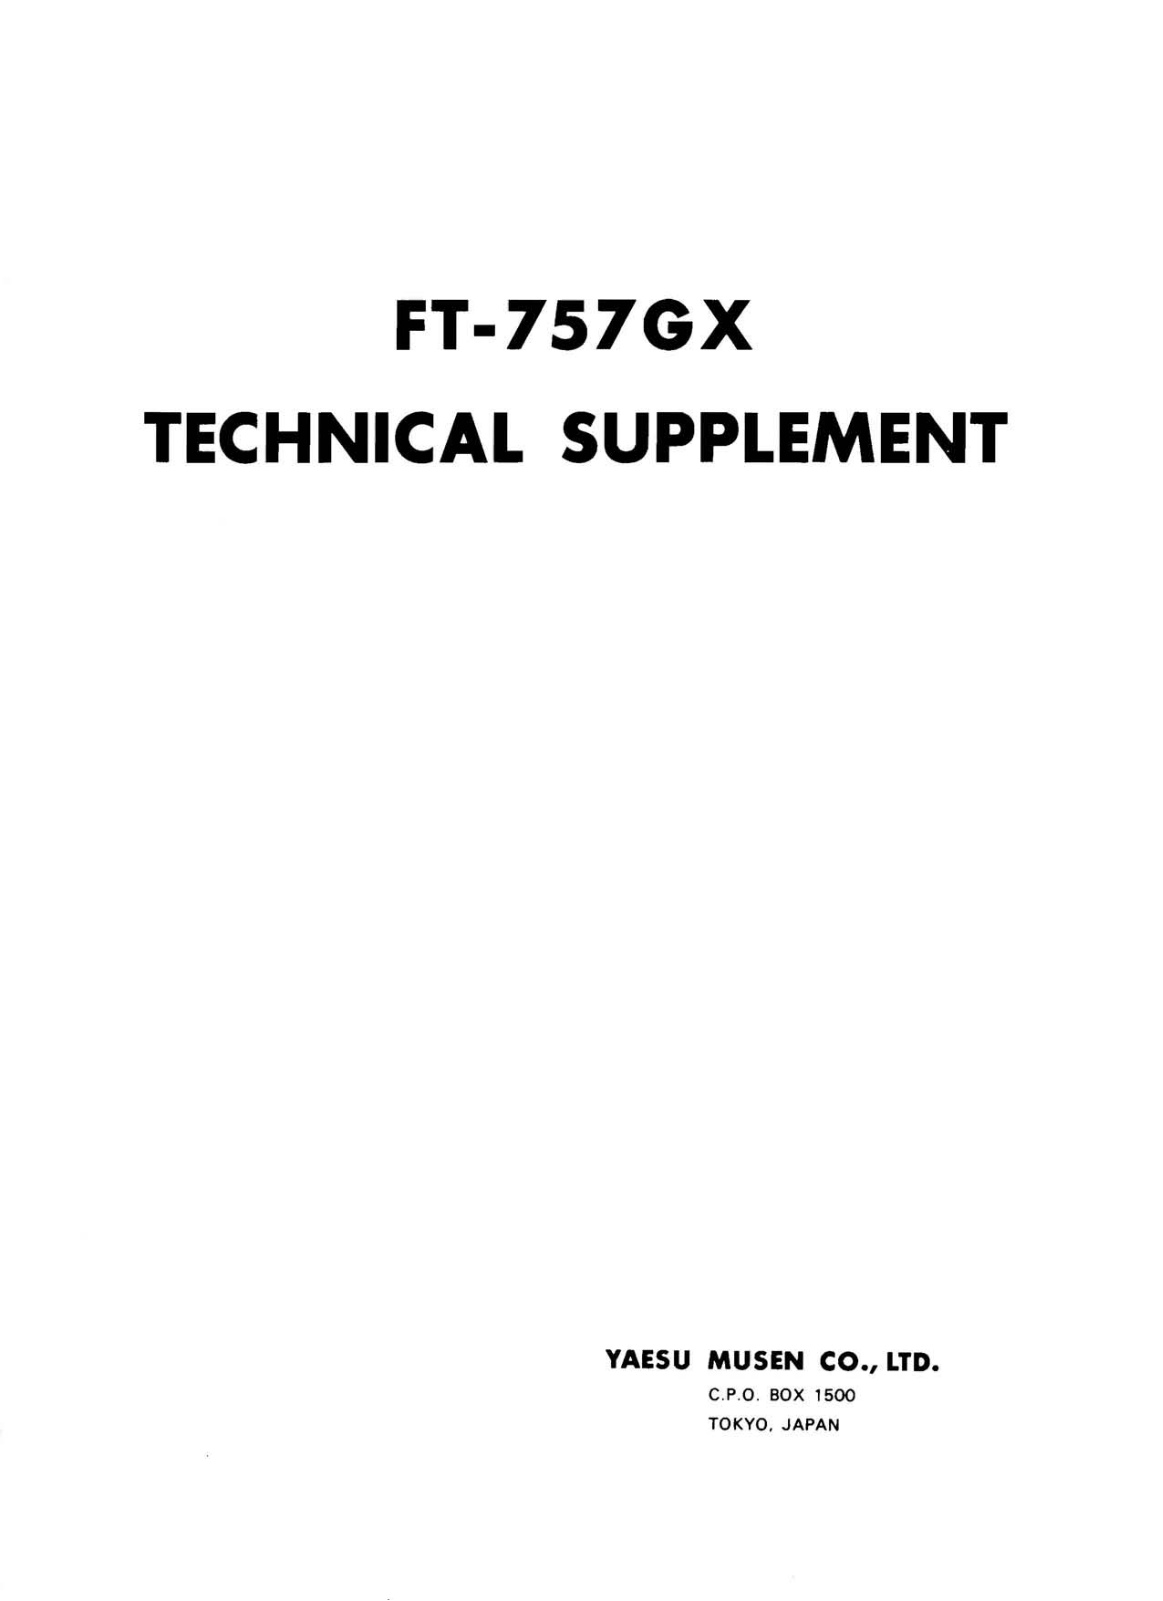 Yaesu FT-757GX User Manual